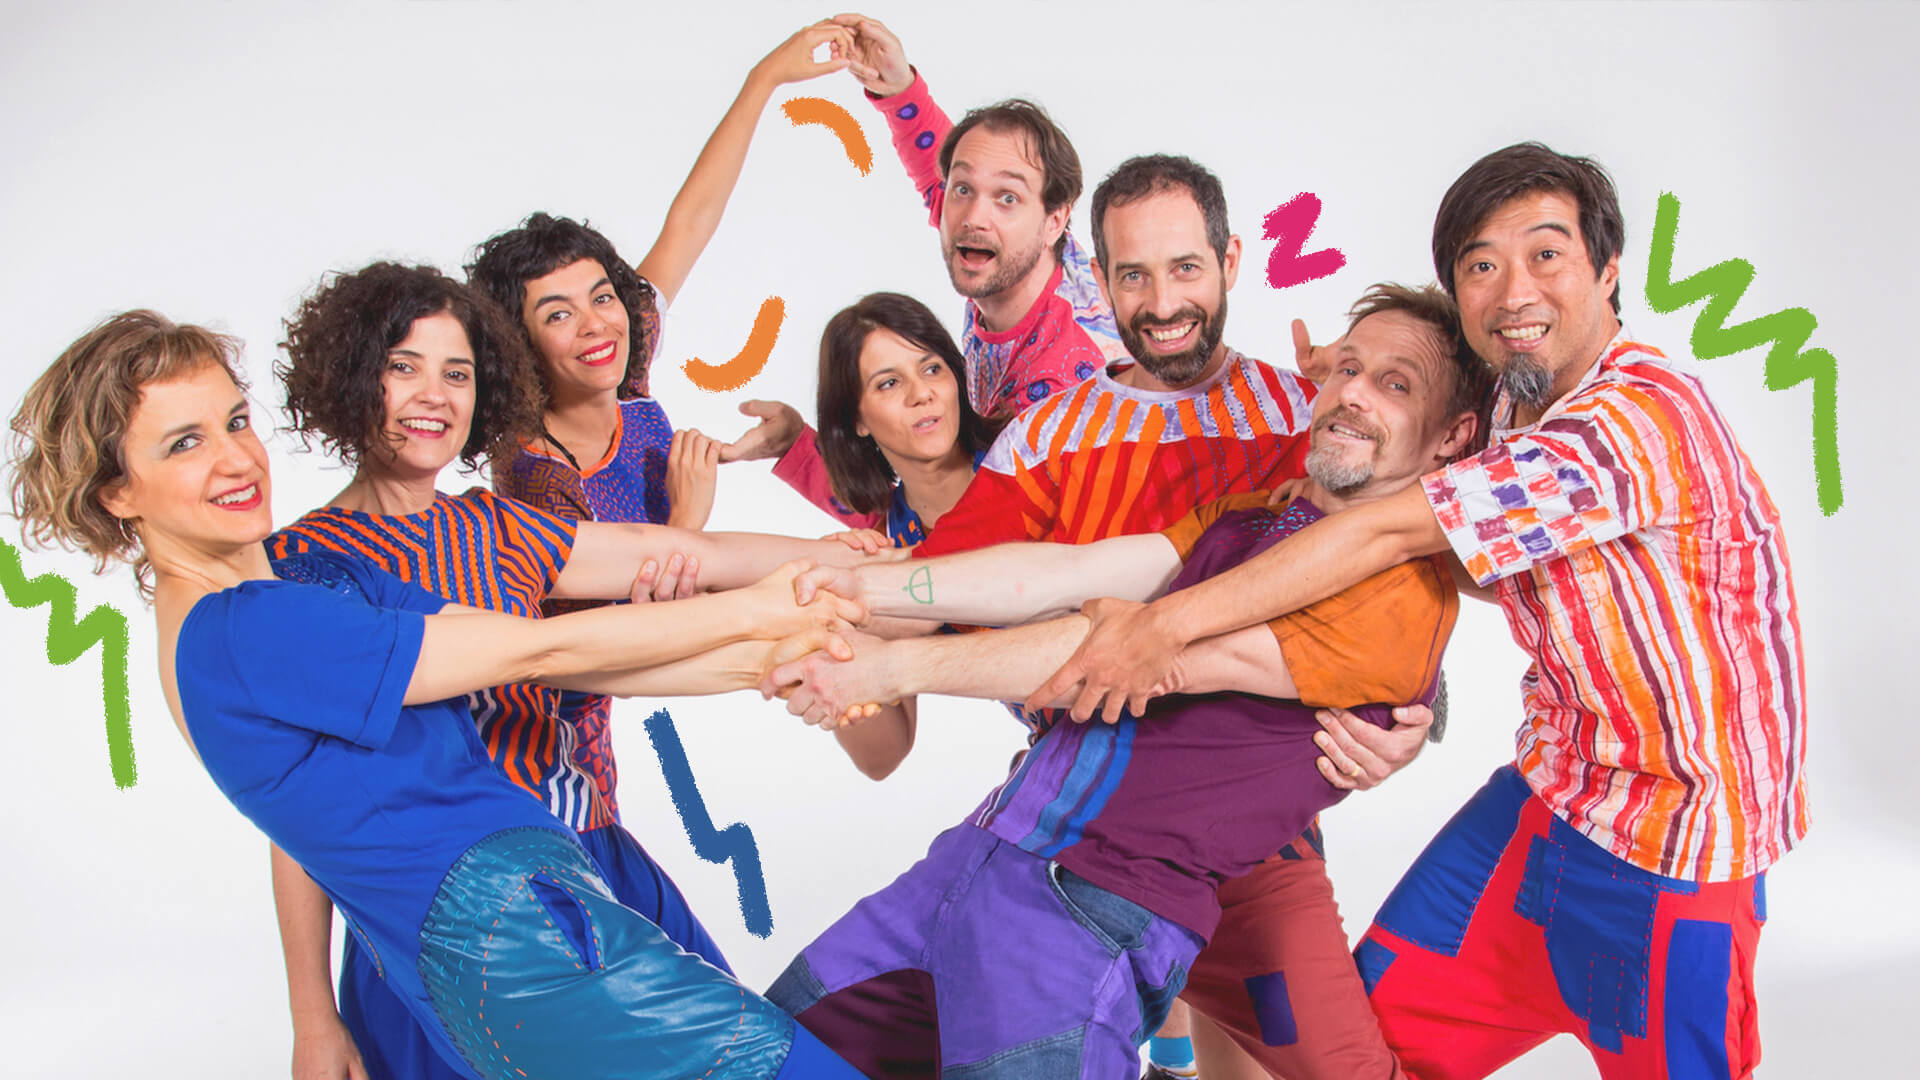 Foto do grupo Barbatuques: homens e mulheres vestem roupas coloridas, alguns se dão as mãos e posam com movimentos de corpo diferentes